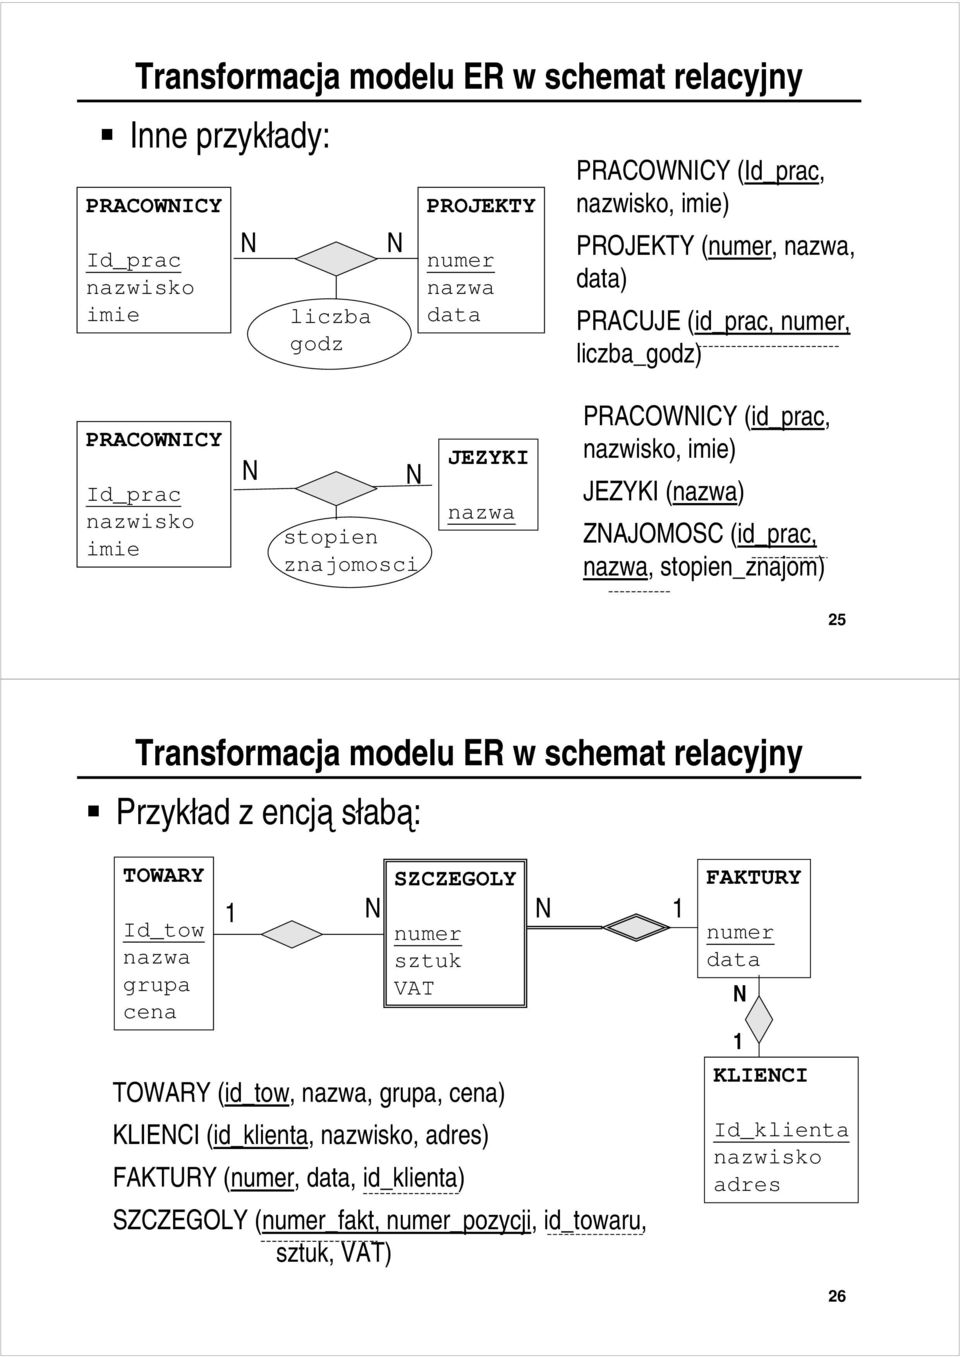 Transformacja modelu ER w schemat relacyjny Przykład z encją słabą: TOWARY Id_tow grupa cena SZCZEGOLY sztuk VAT TOWARY (id_tow,, grupa,